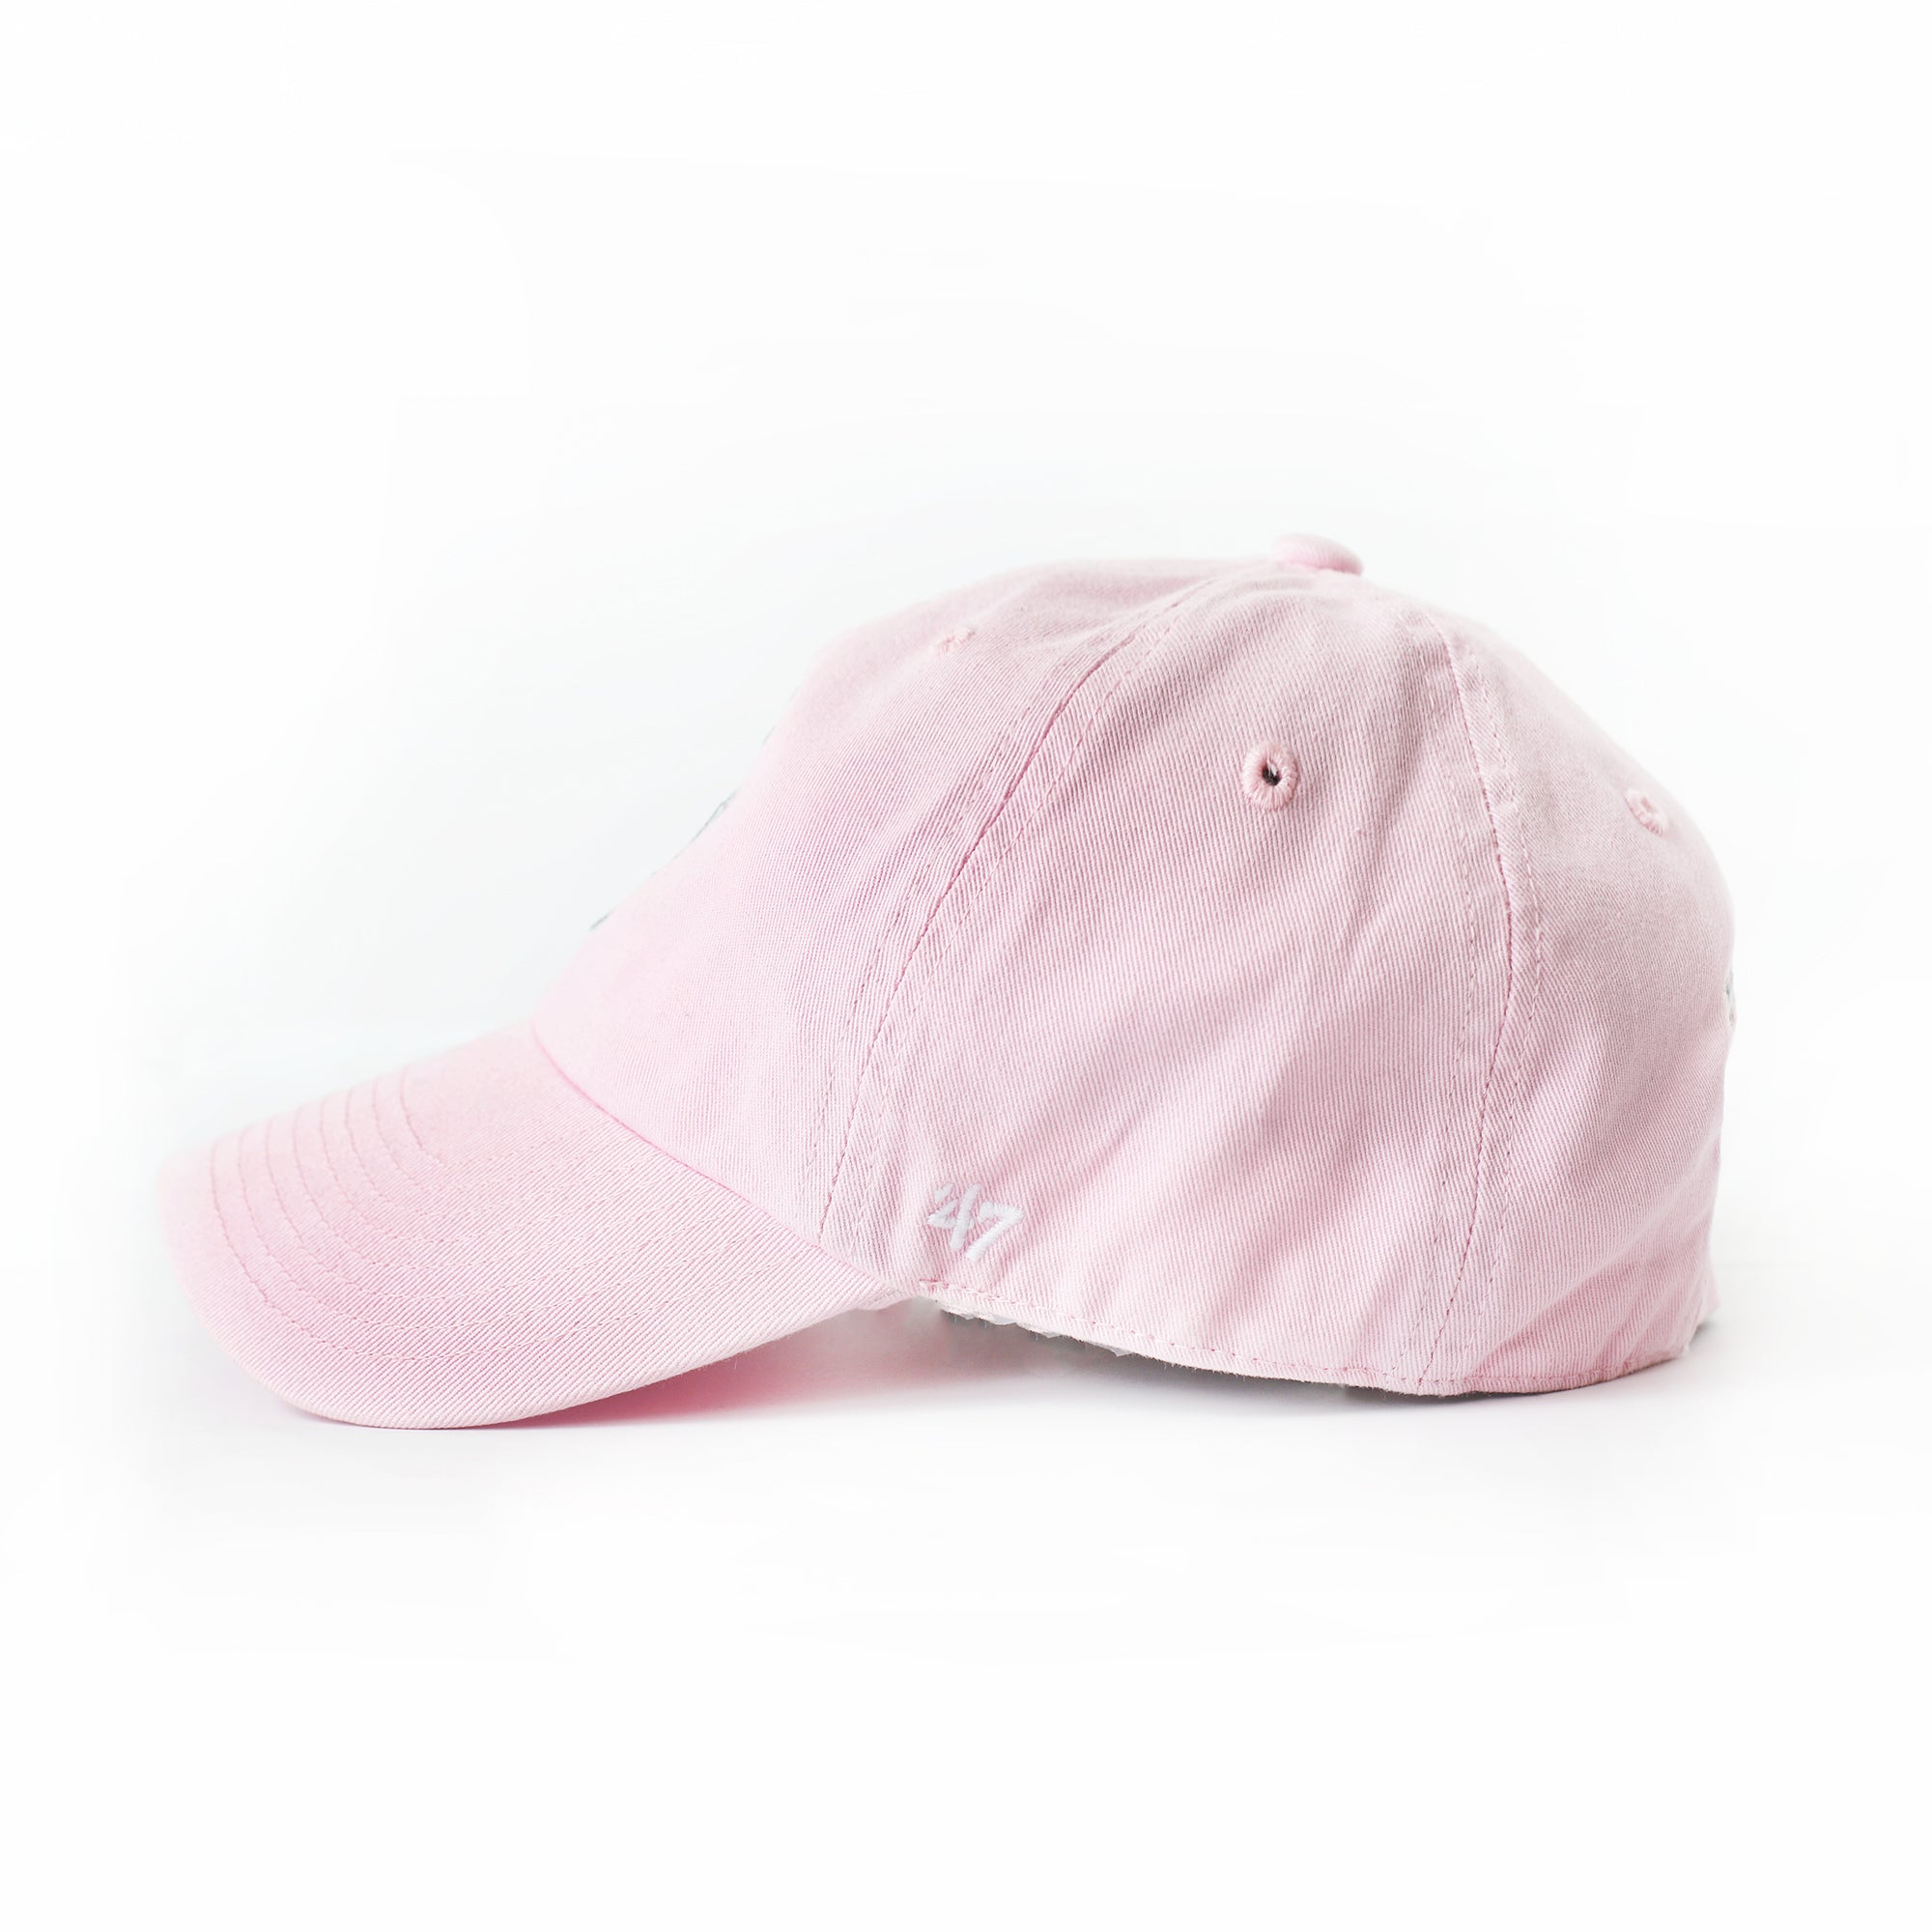 Rose cap – 3RD SIBLING